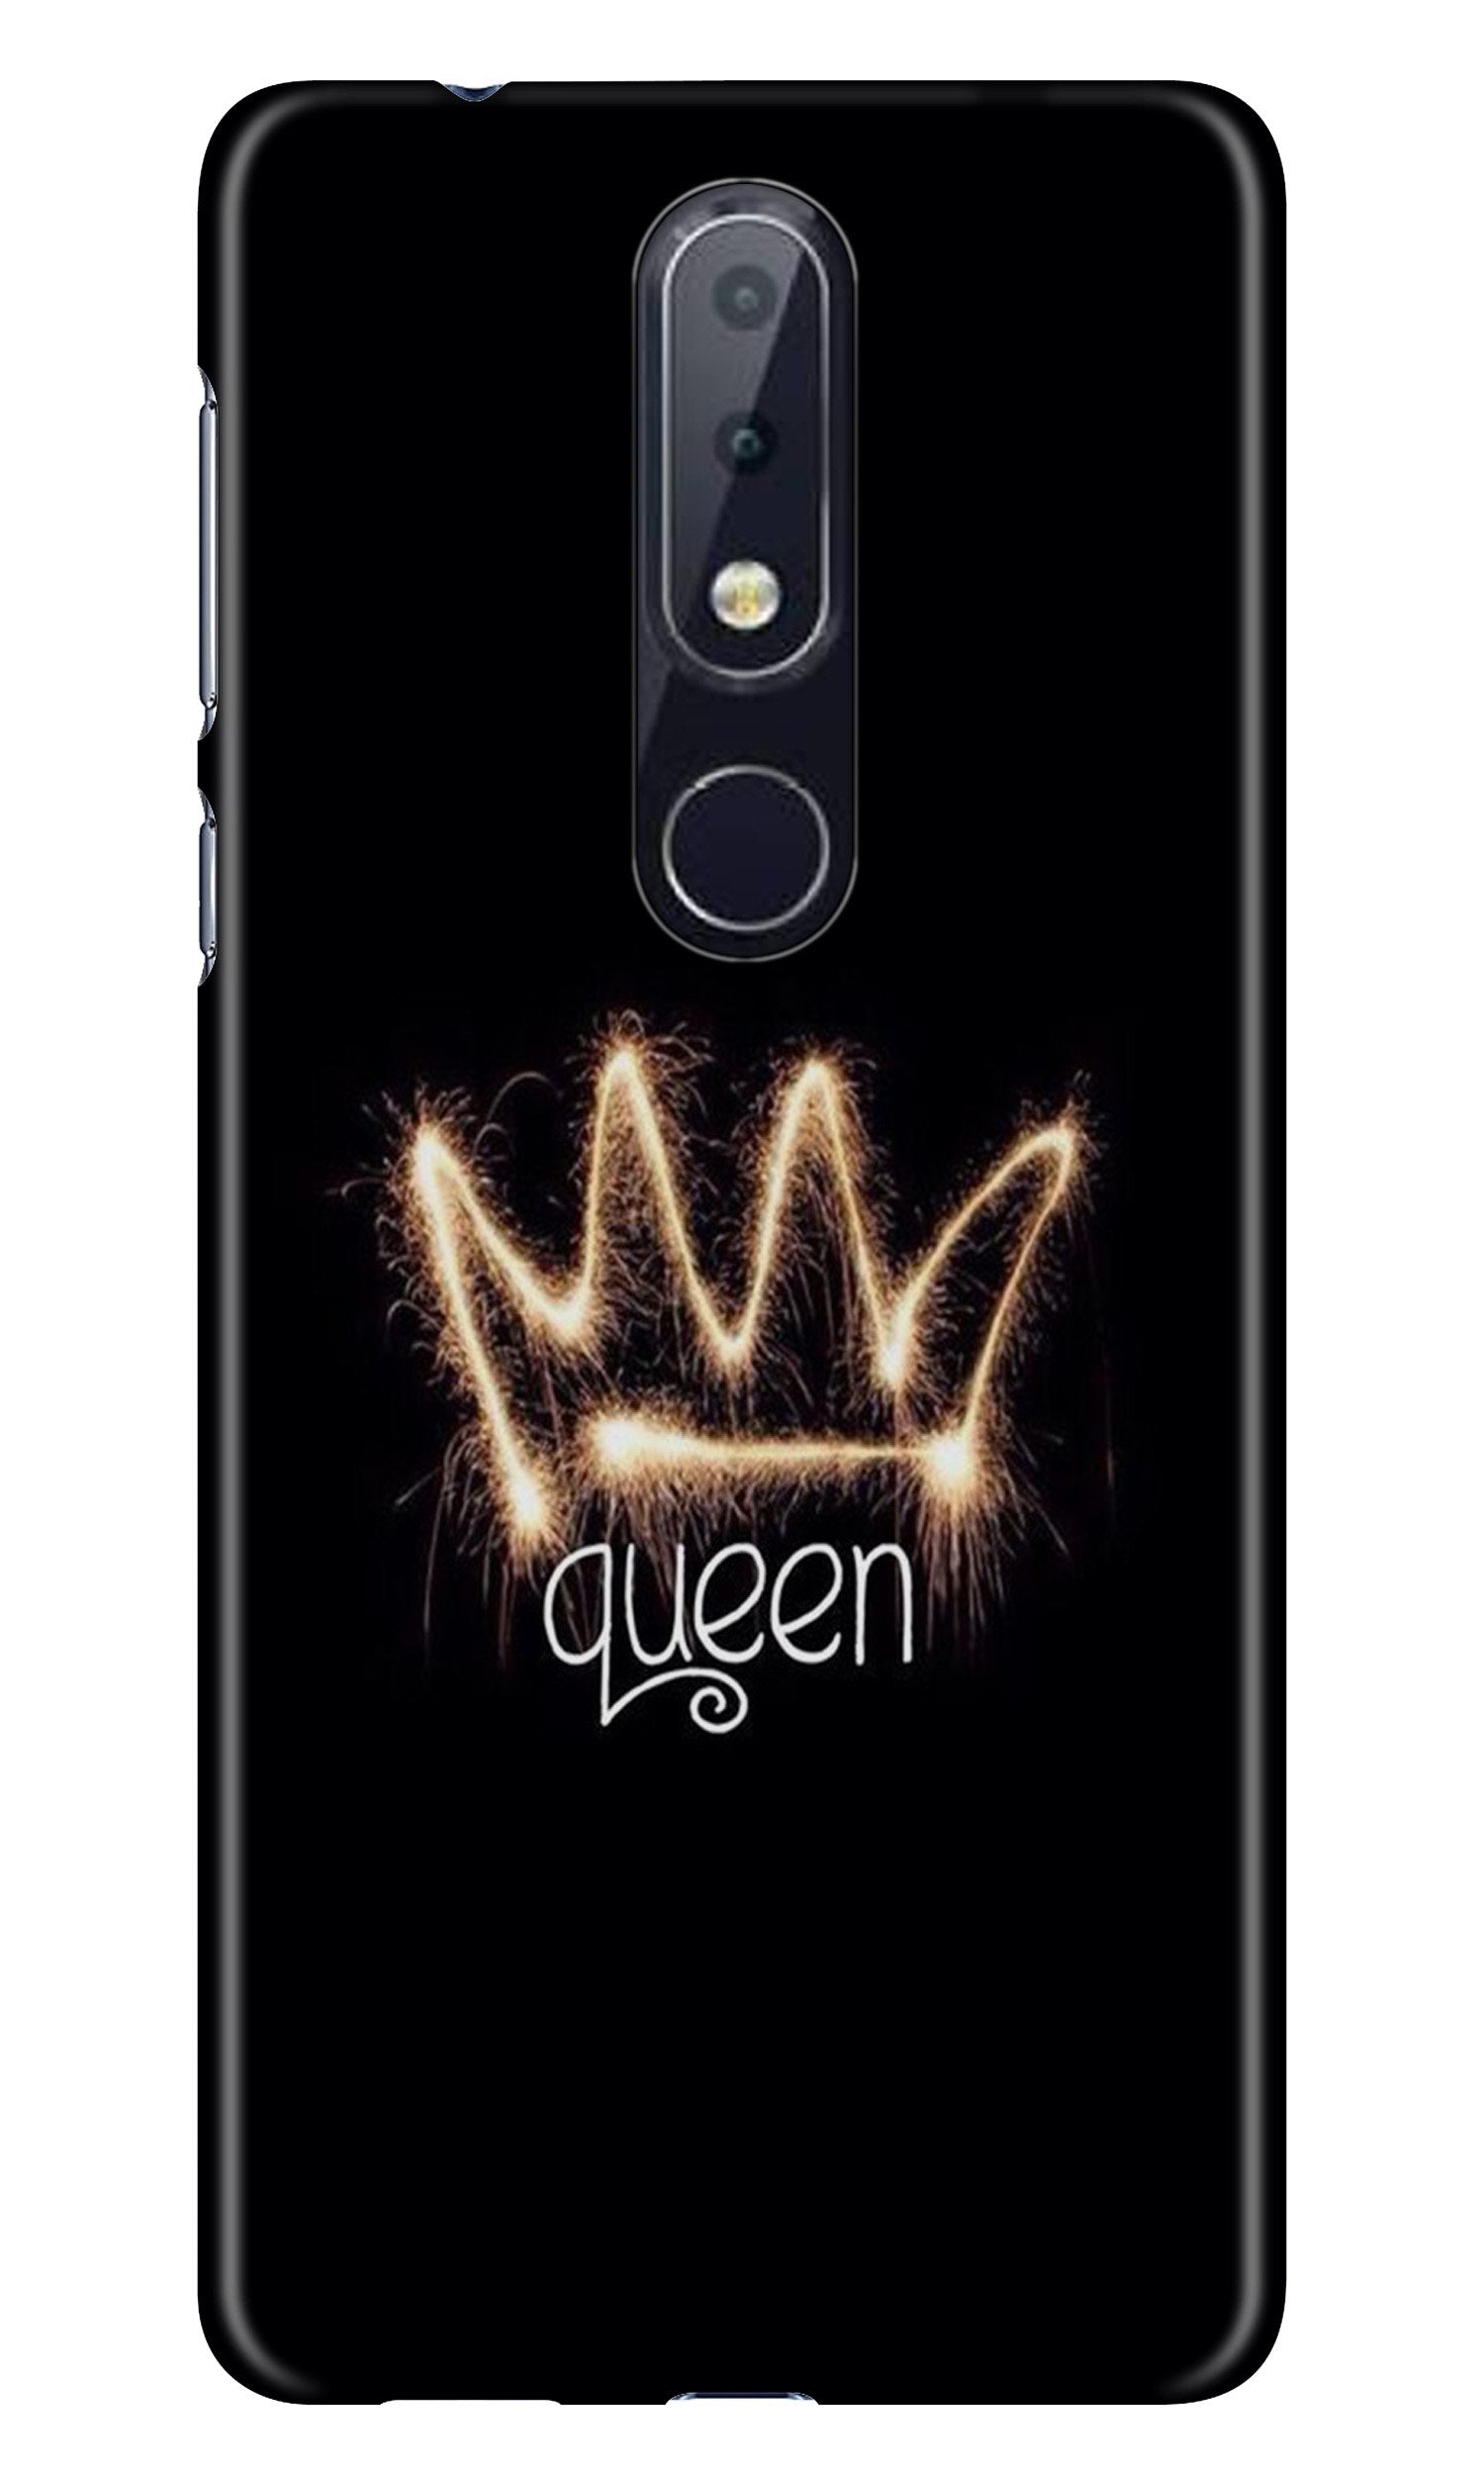 Queen Case for Nokia 4.2 (Design No. 270)